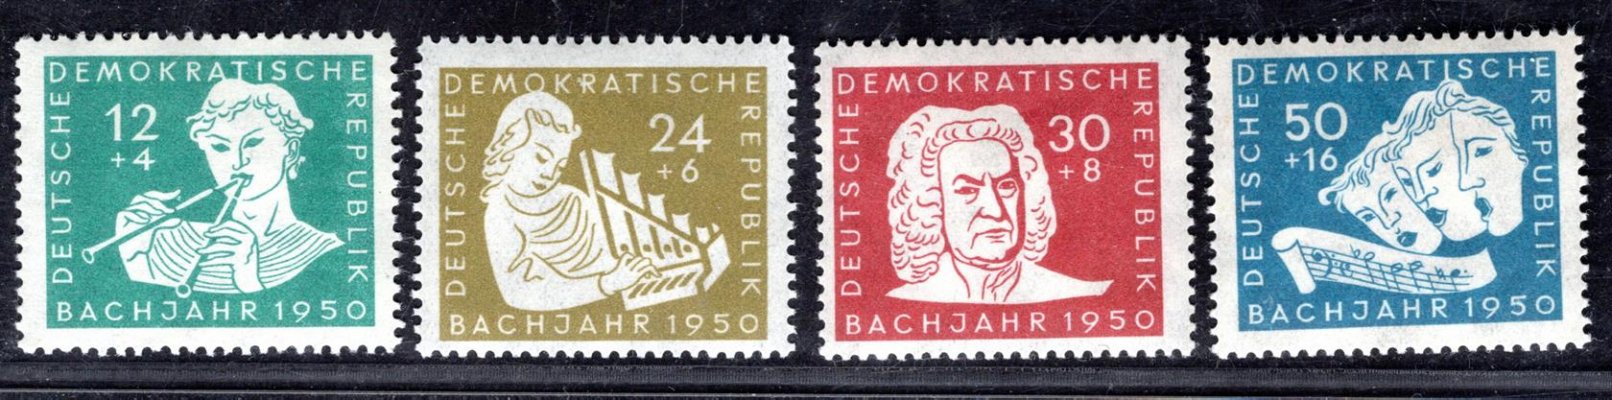 DDR - Mi. 256 - 9, J.S.Bach, kompletní řada